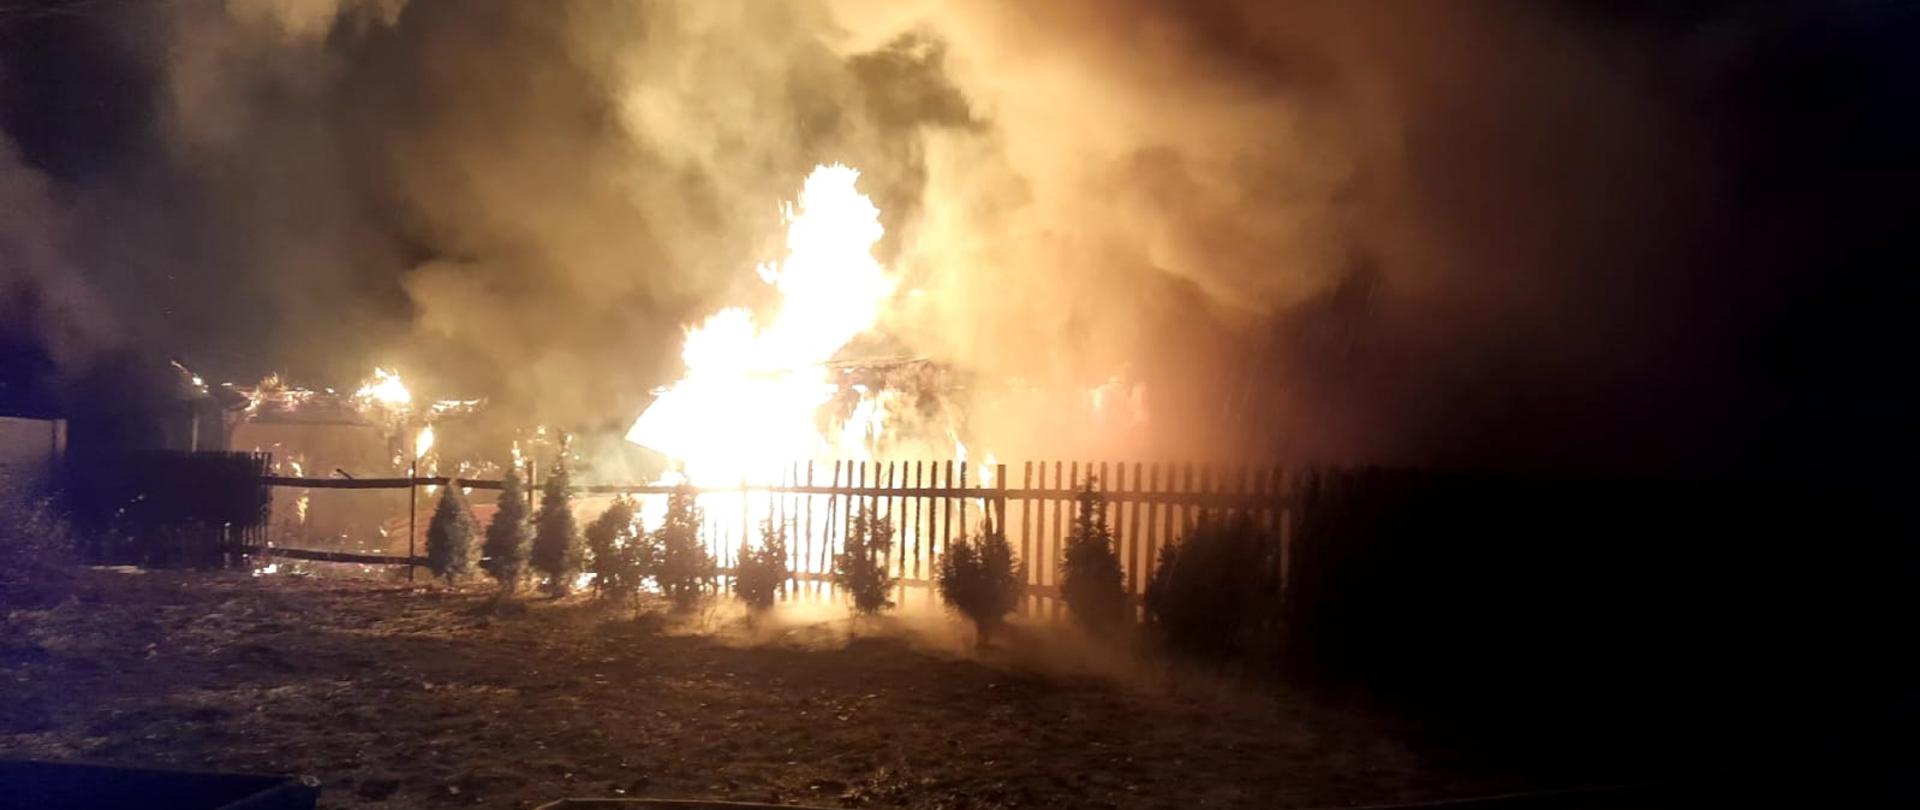 Pożar budynków gospodarczych w Piasku gmina Stąporków